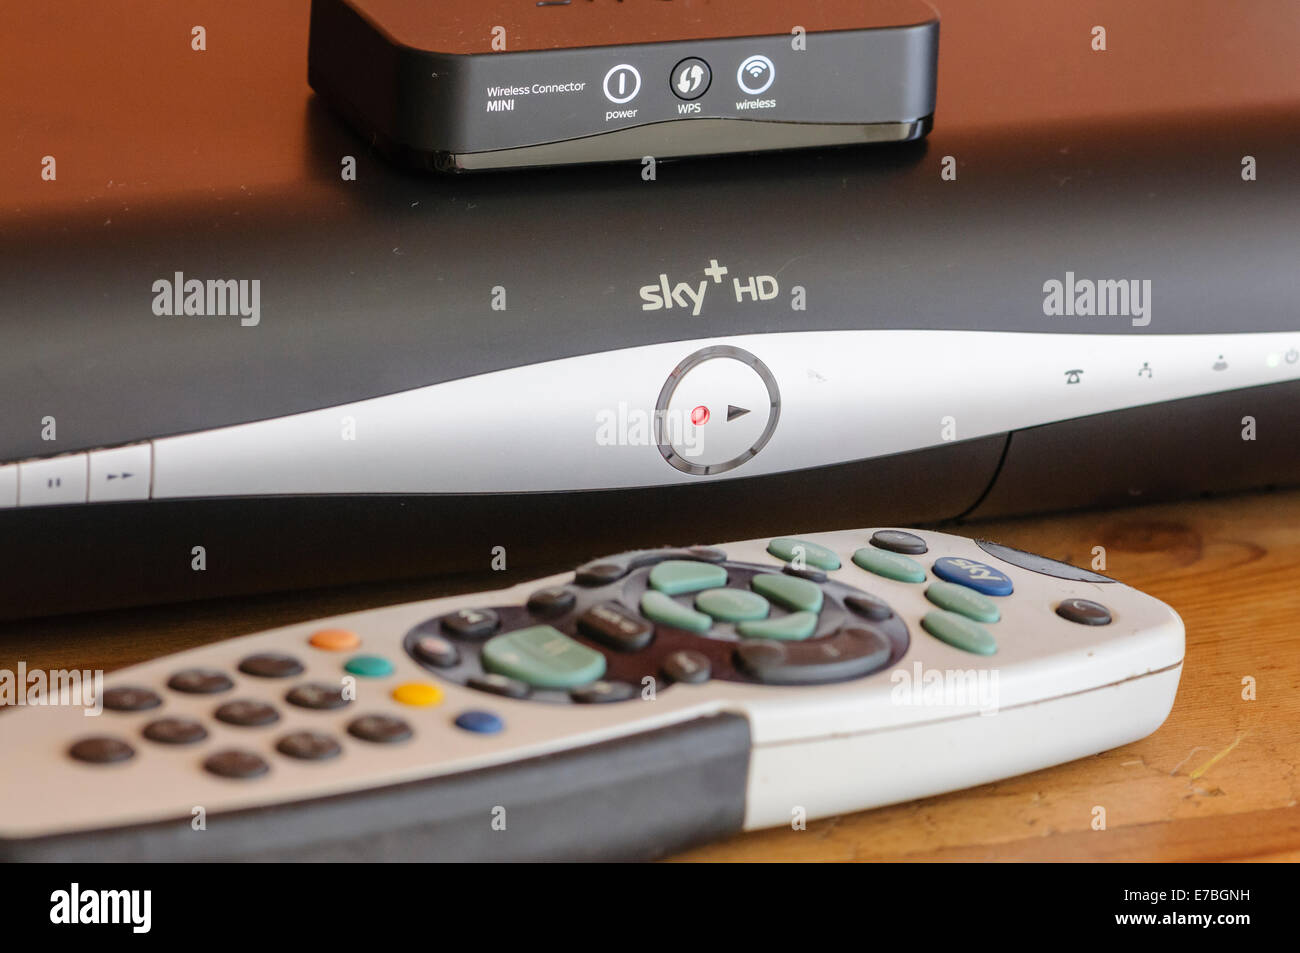 Sky + HD-Box mit einem WiFi-Wireless-Anschluss Adapter, Internet-Zugang ermöglichen Stockfoto